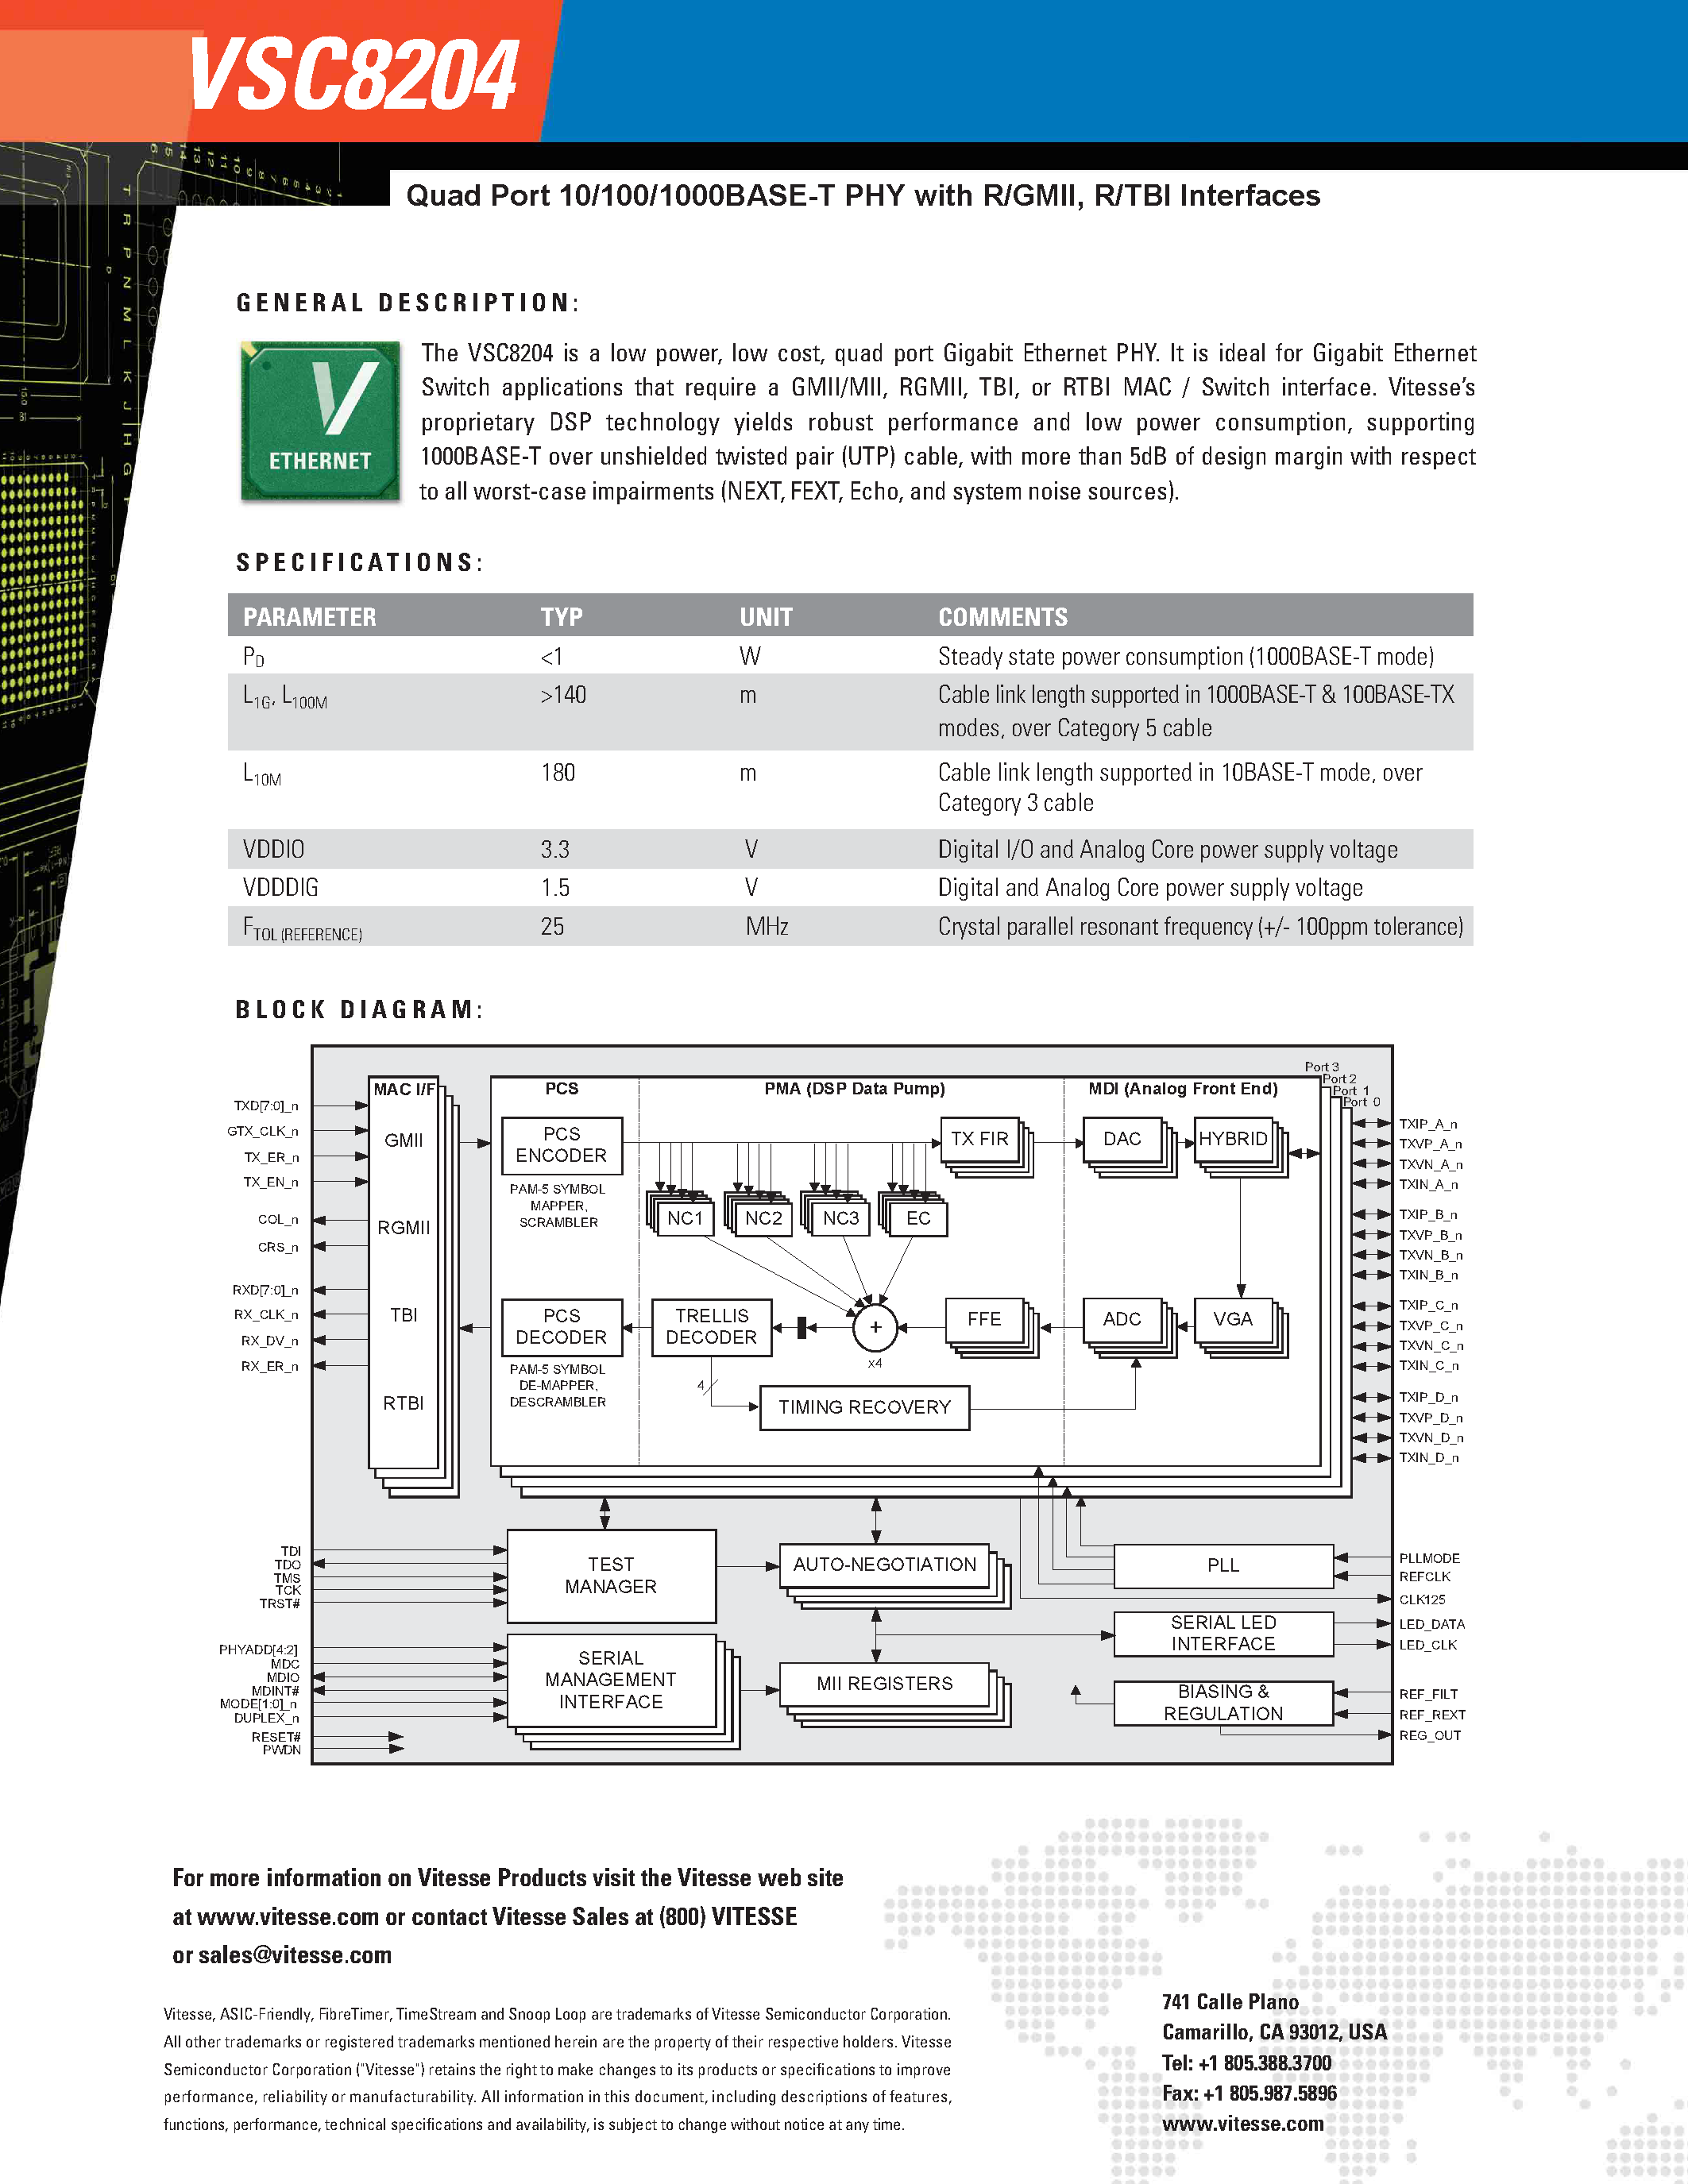 Даташит VSC8204 - Quad Port 10/100/1000 Base-T PHY страница 2